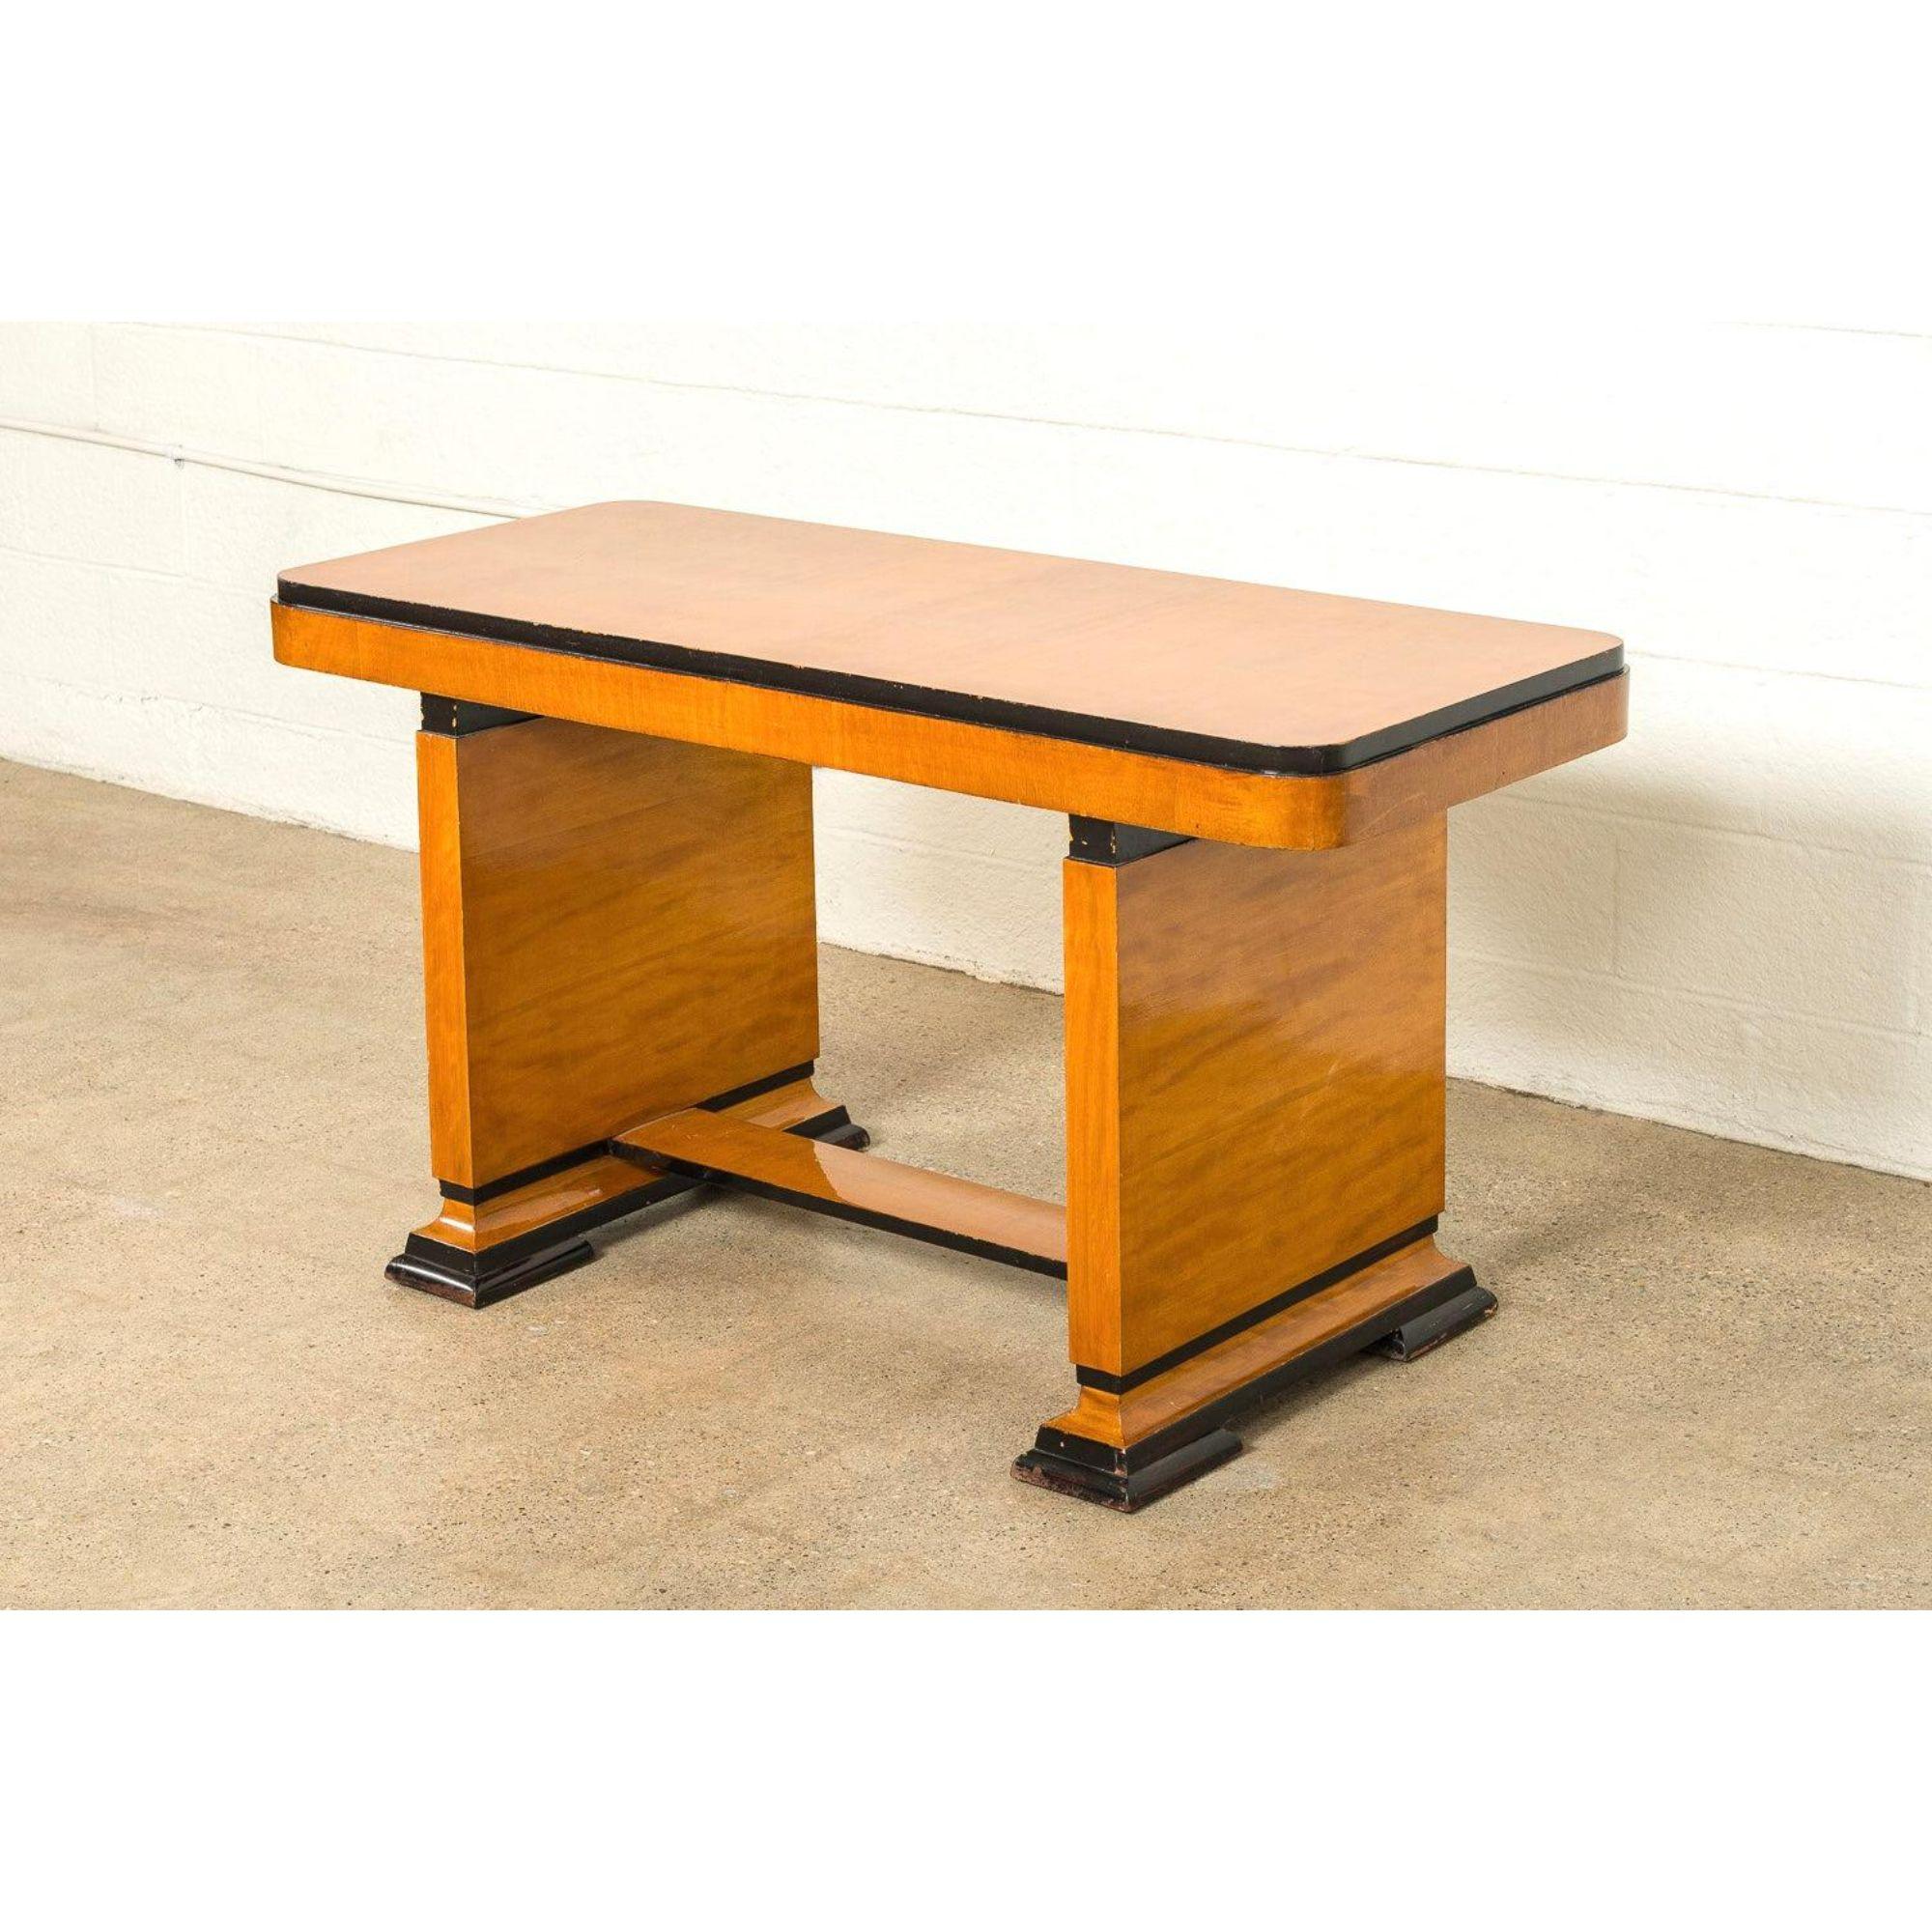 Dieser schöne Art-Déco-Tisch oder Schreibtisch um 1930 ist fachmännisch aus Ahornholz handgefertigt und verfügt über eine rechteckige Tischplatte mit geschwungenen Kanten und hoher Schürze, einen Bocksfuß und ebonisierte Akzente.